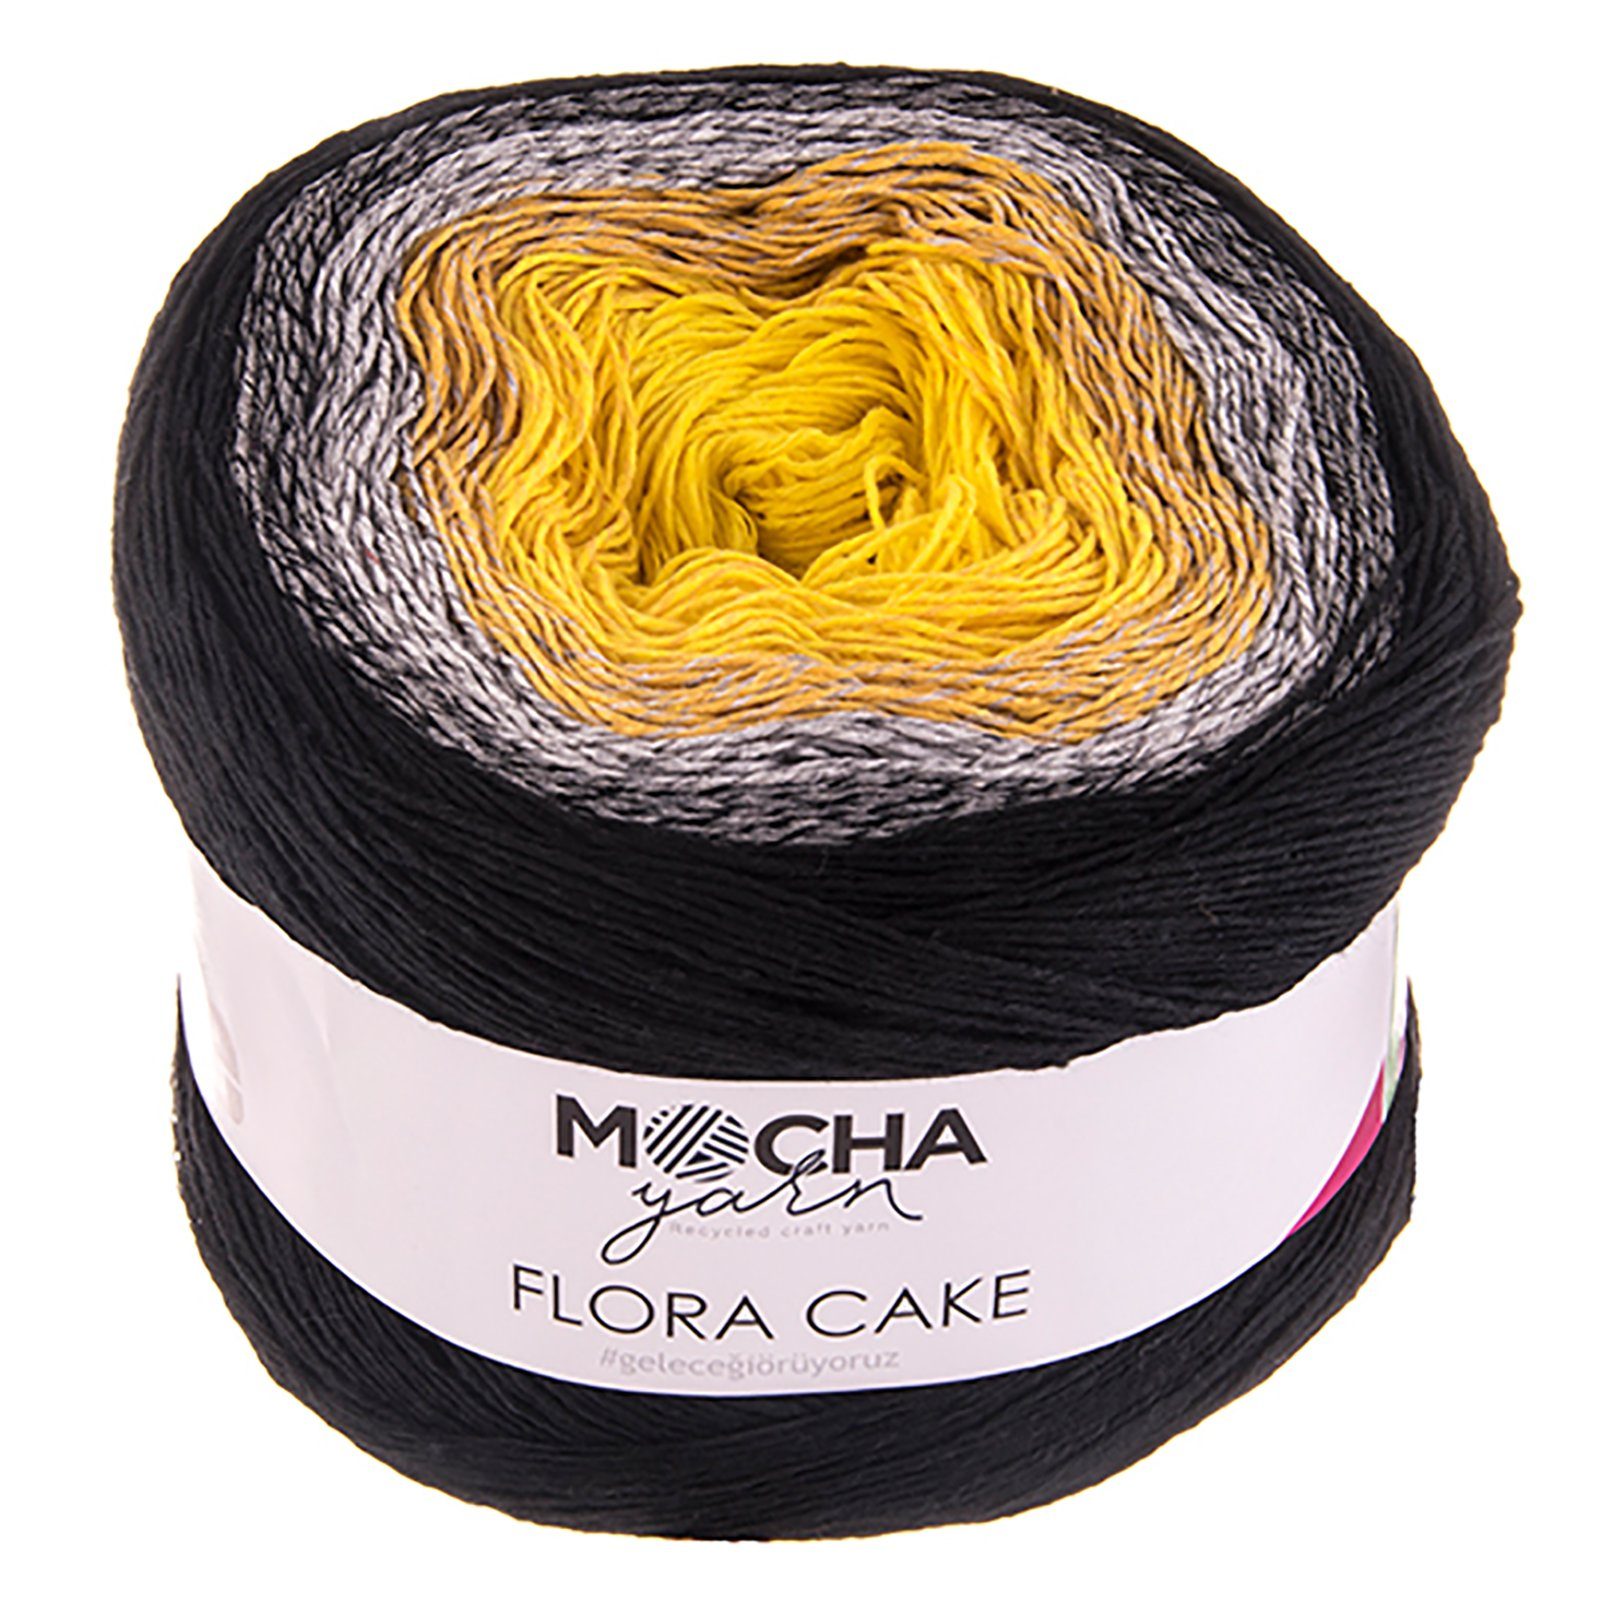 mochayarn 250g Farbverlaufsgarn Flora Cake Häkelwolle, 900 m, FLO03 gelb- grau-schwarz